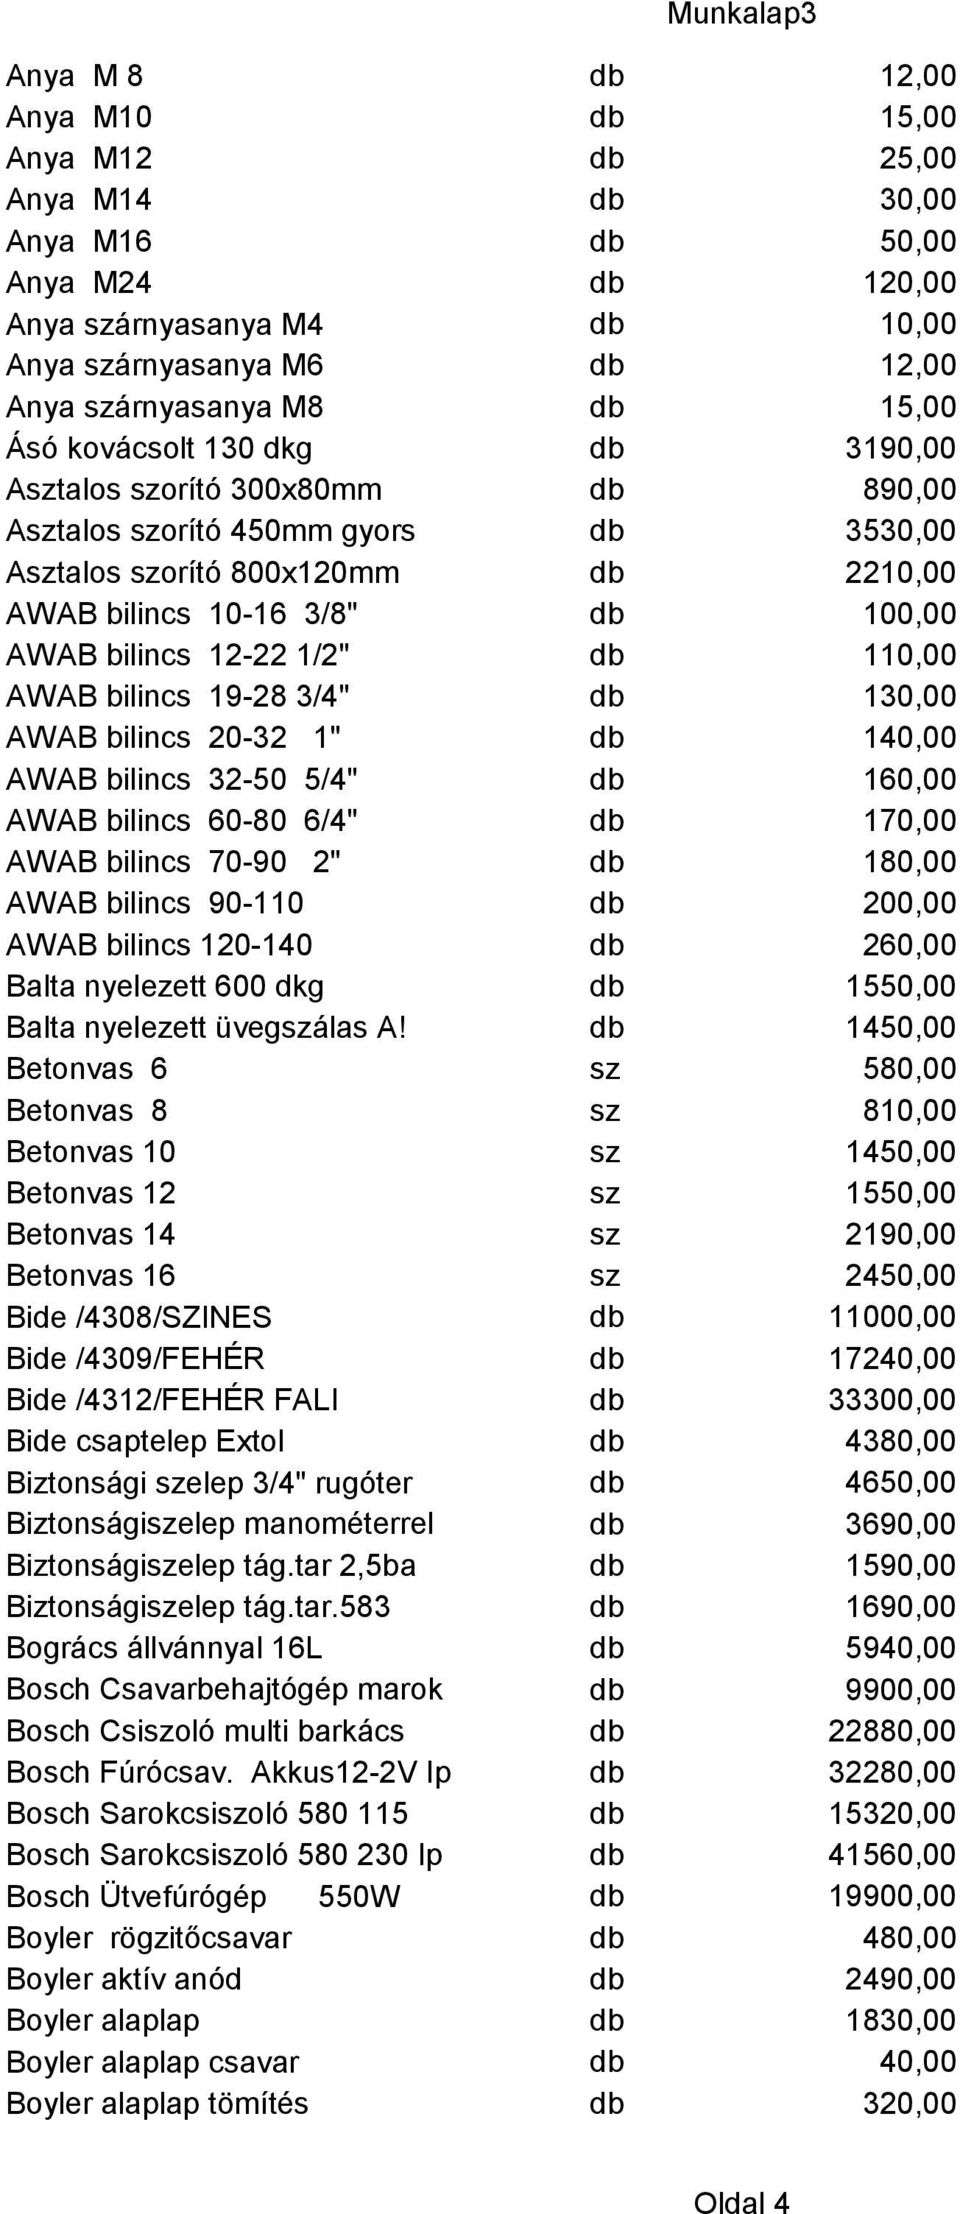 1/2" db 110,00 AWAB bilincs 19-28 3/4" db 130,00 AWAB bilincs 20-32 1" db 140,00 AWAB bilincs 32-50 5/4" db 160,00 AWAB bilincs 60-80 6/4" db 170,00 AWAB bilincs 70-90 2" db 180,00 AWAB bilincs